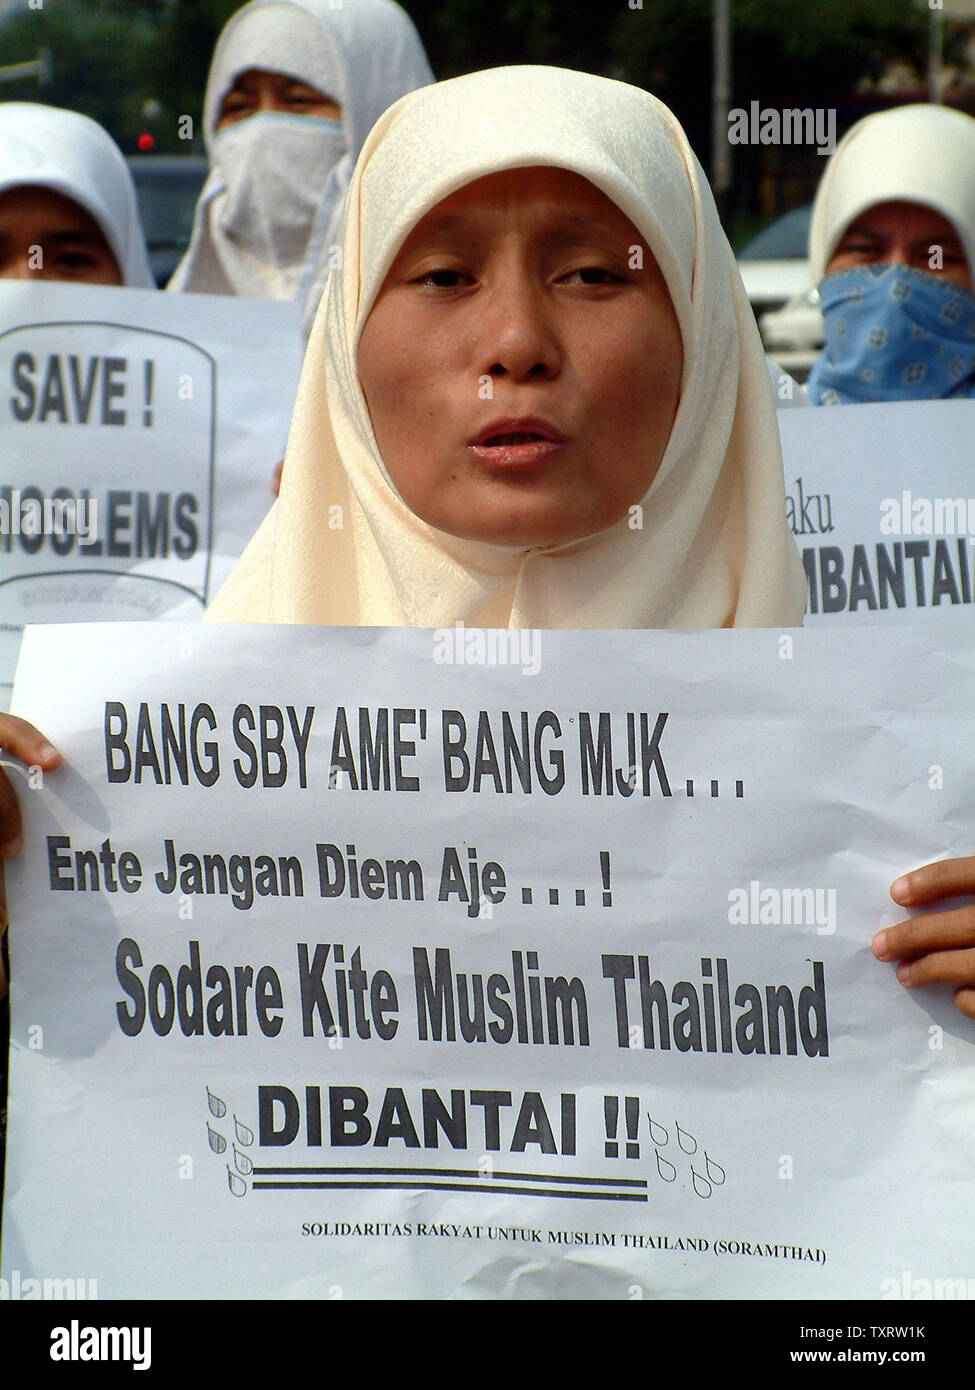 Eine weibliche Demonstrant schreit "Allahu Akbar" (Gott ist groß), die während einer Demonstration vor der Thailändischen Botschaft in Jakarta, 29. Oktober 2000, die seniorenuniversität neue Tod von mindestens 84 muslimischen Aufständischen in der Provinz Narathiwat. Mindestens 200 Demonstranten zeigten ihre religiöse Solidarität und verurteilte die thailändische Polizei Aktion, die auf die große Zahl der Todesopfer geführt. (UPI/Newspictures Saprizal) Stockfoto